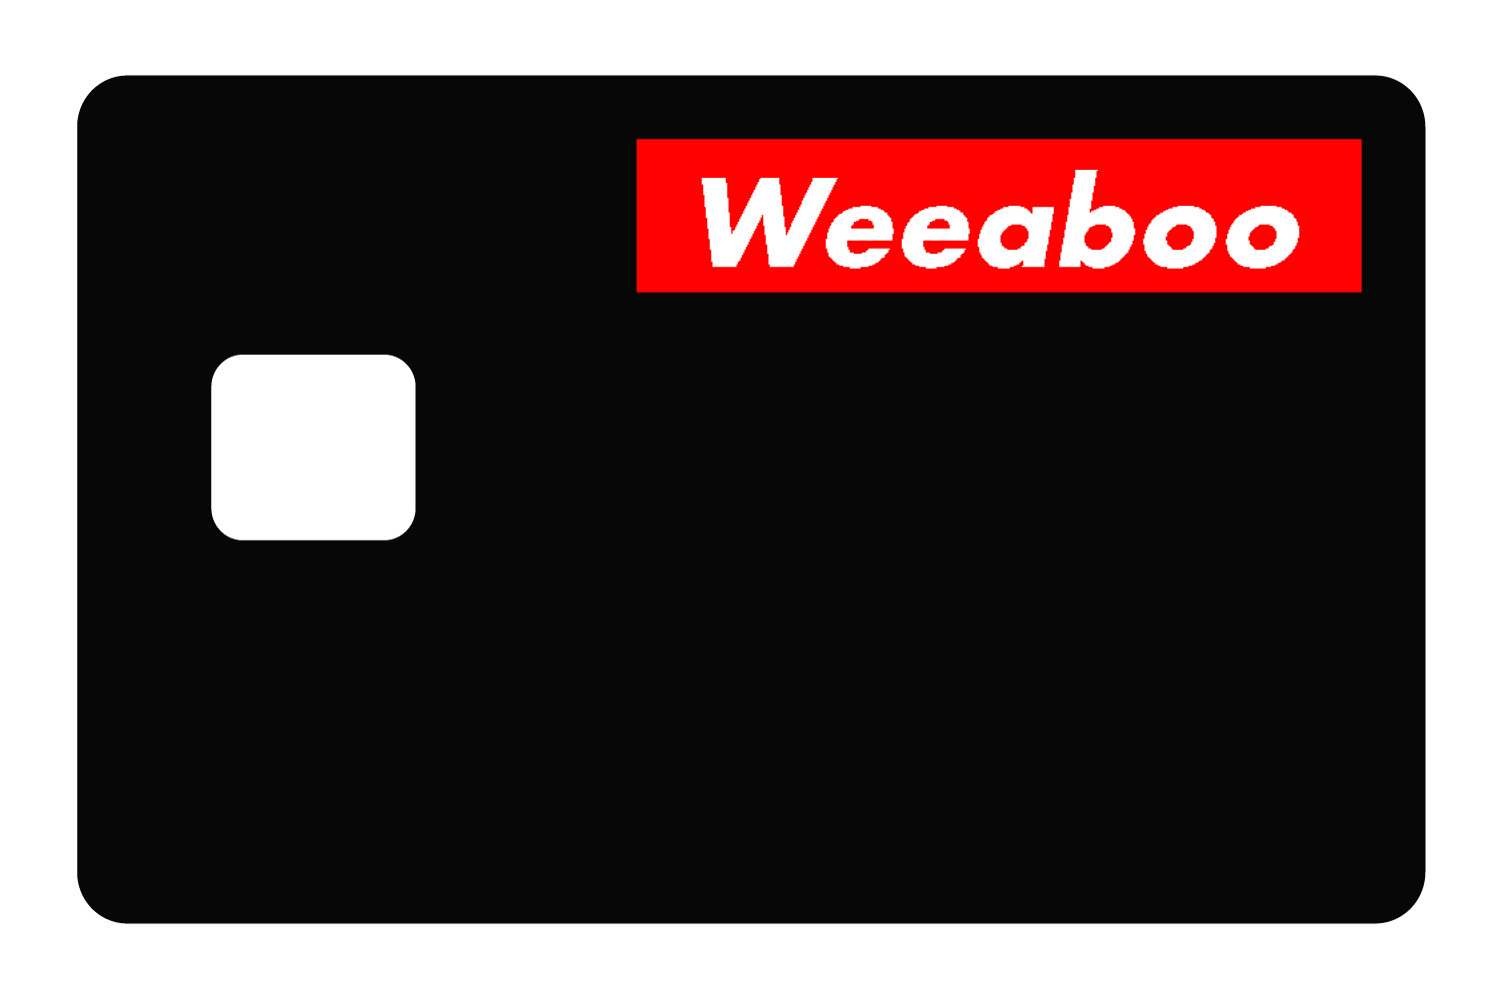 Weeaboo